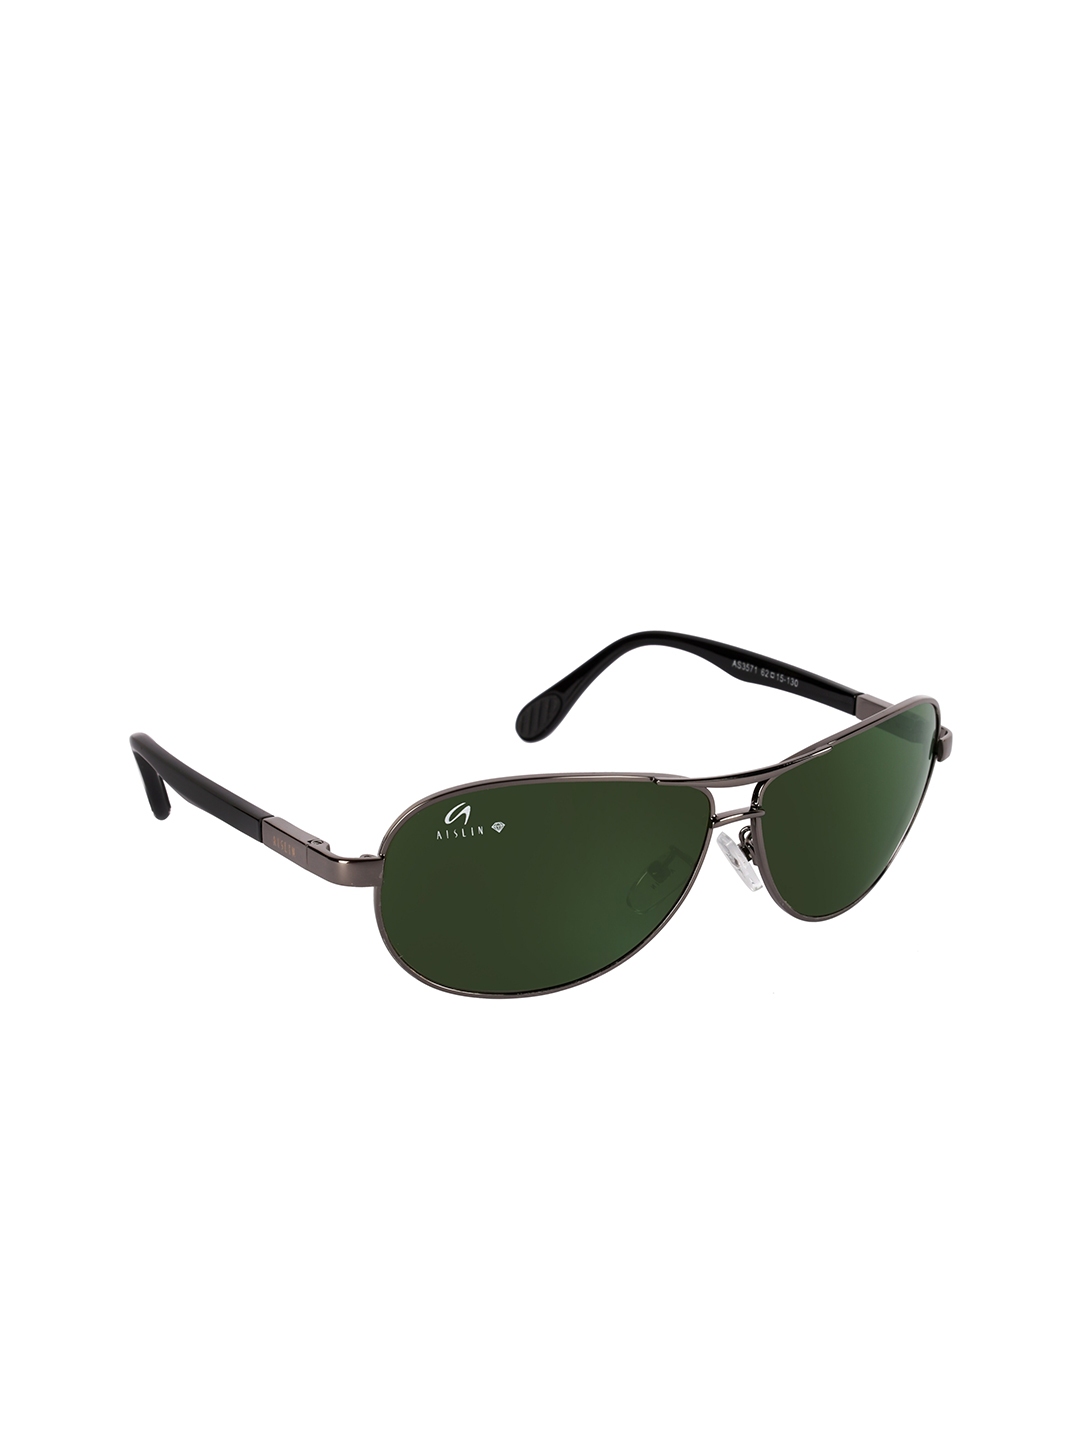 Buy Aislin Men Green Aviator Sunglasses Sunglasses For Men 15040168 5660